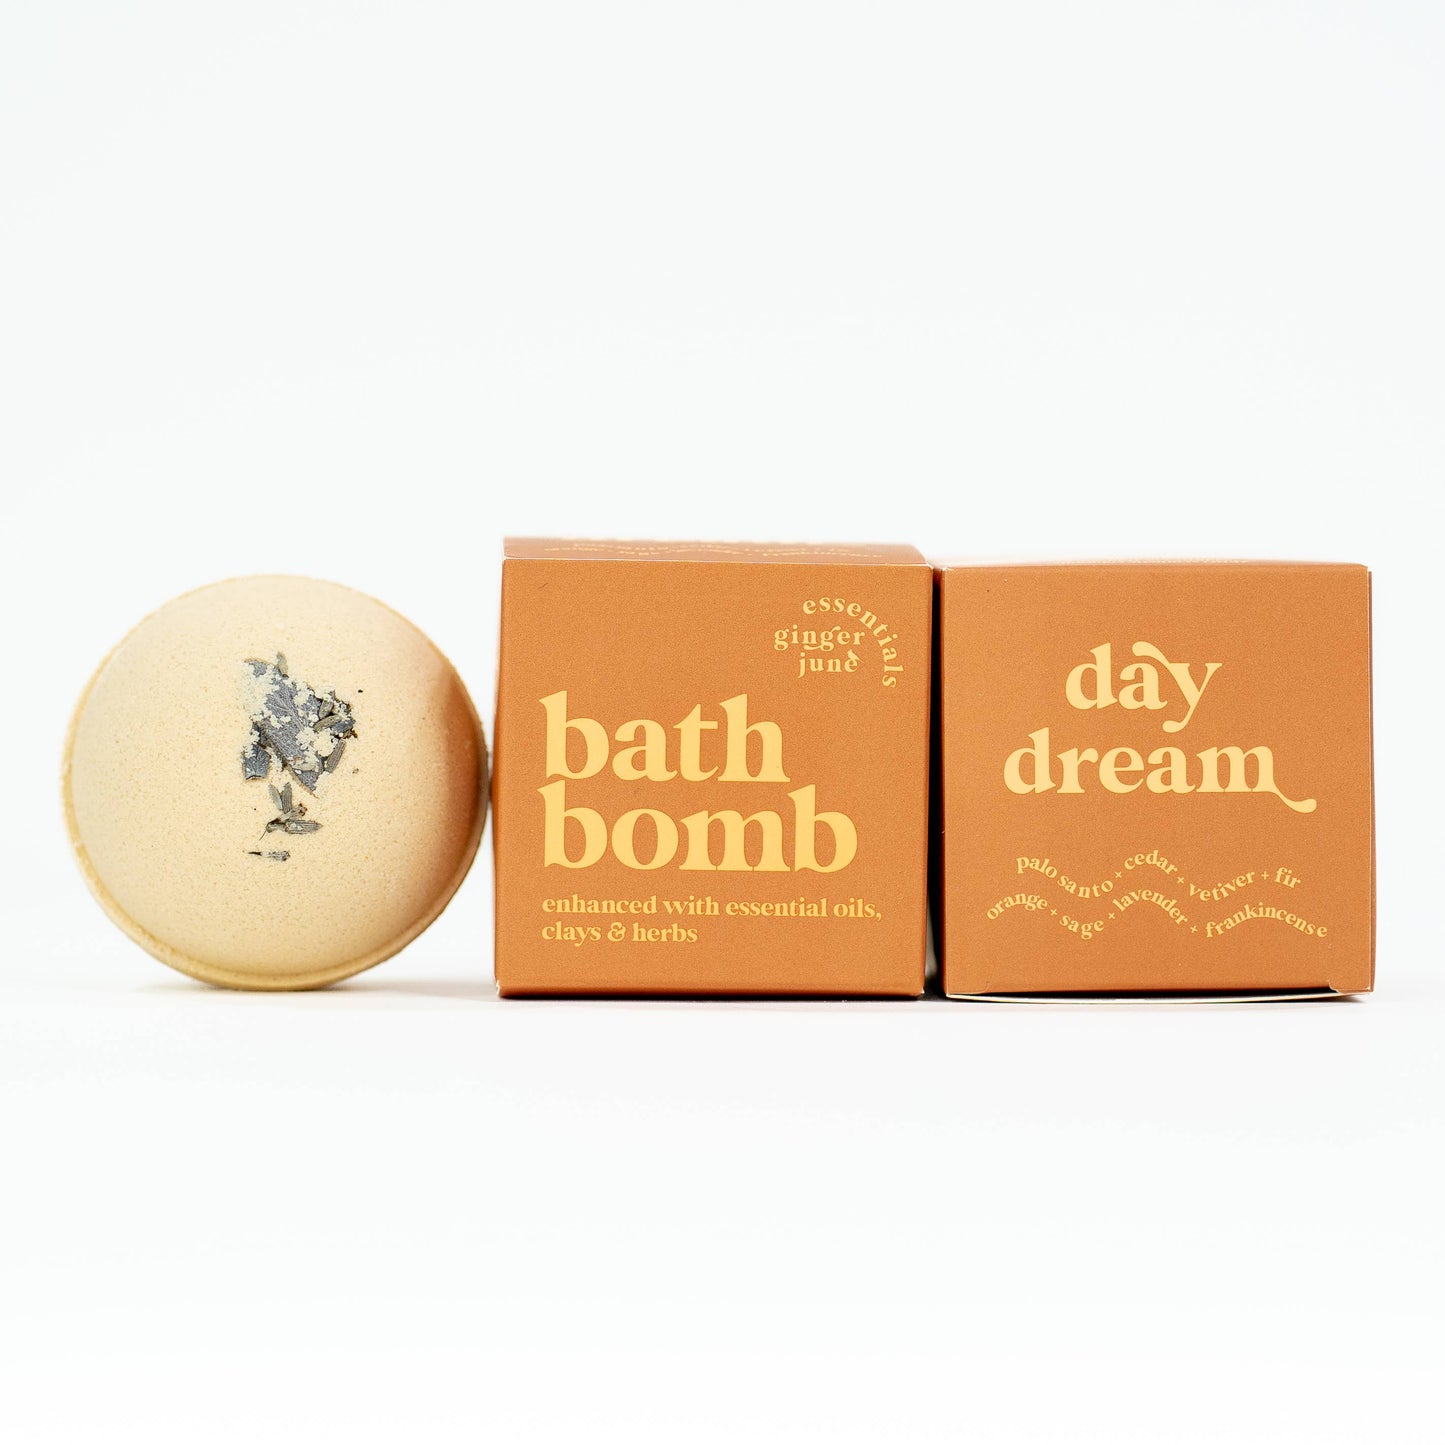 100% Botanical Bath Bomb Daydream